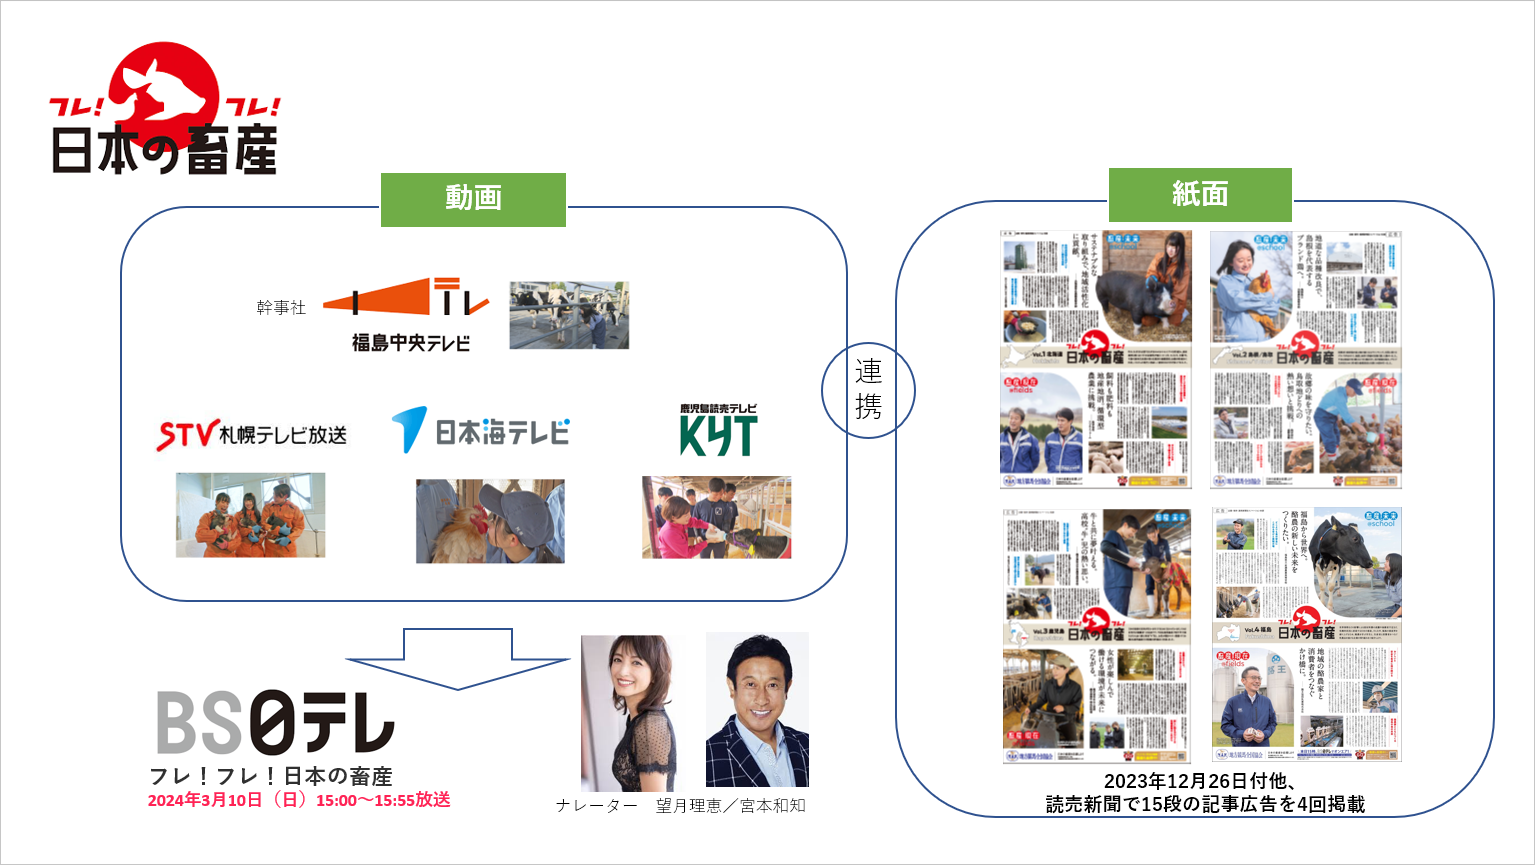 地方競馬全国協会「フレフレ！日本の畜産」キャンペーン